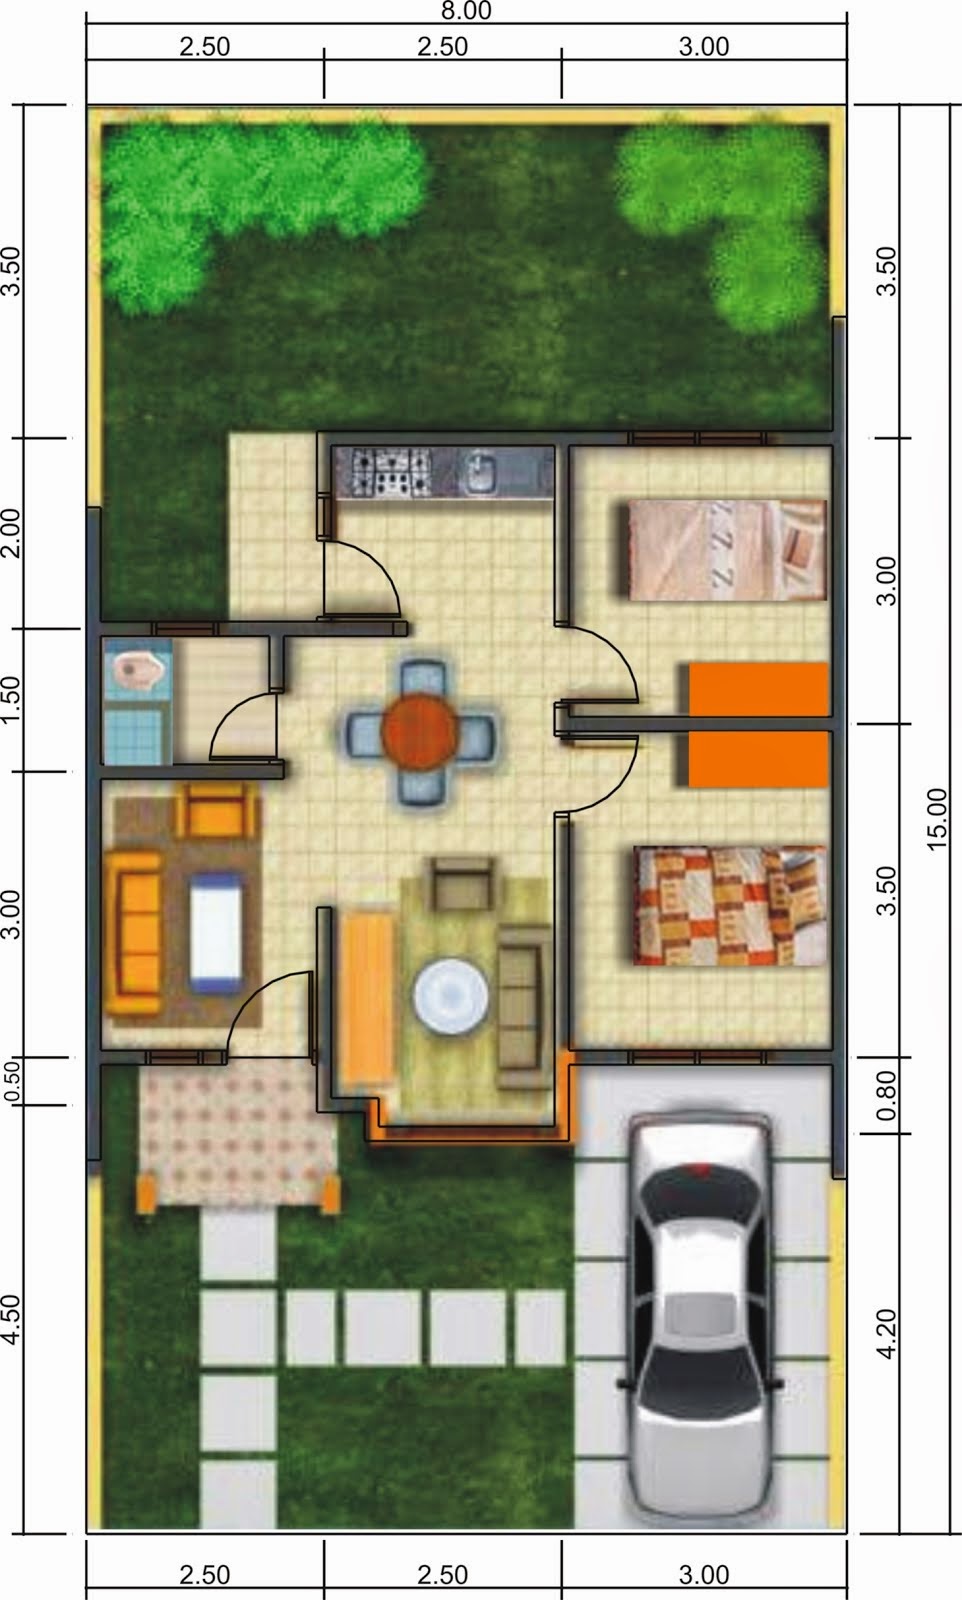 104 Denah Rumah Minimalis Mewah 1 Lantai Gambar Desain Rumah Minimalis